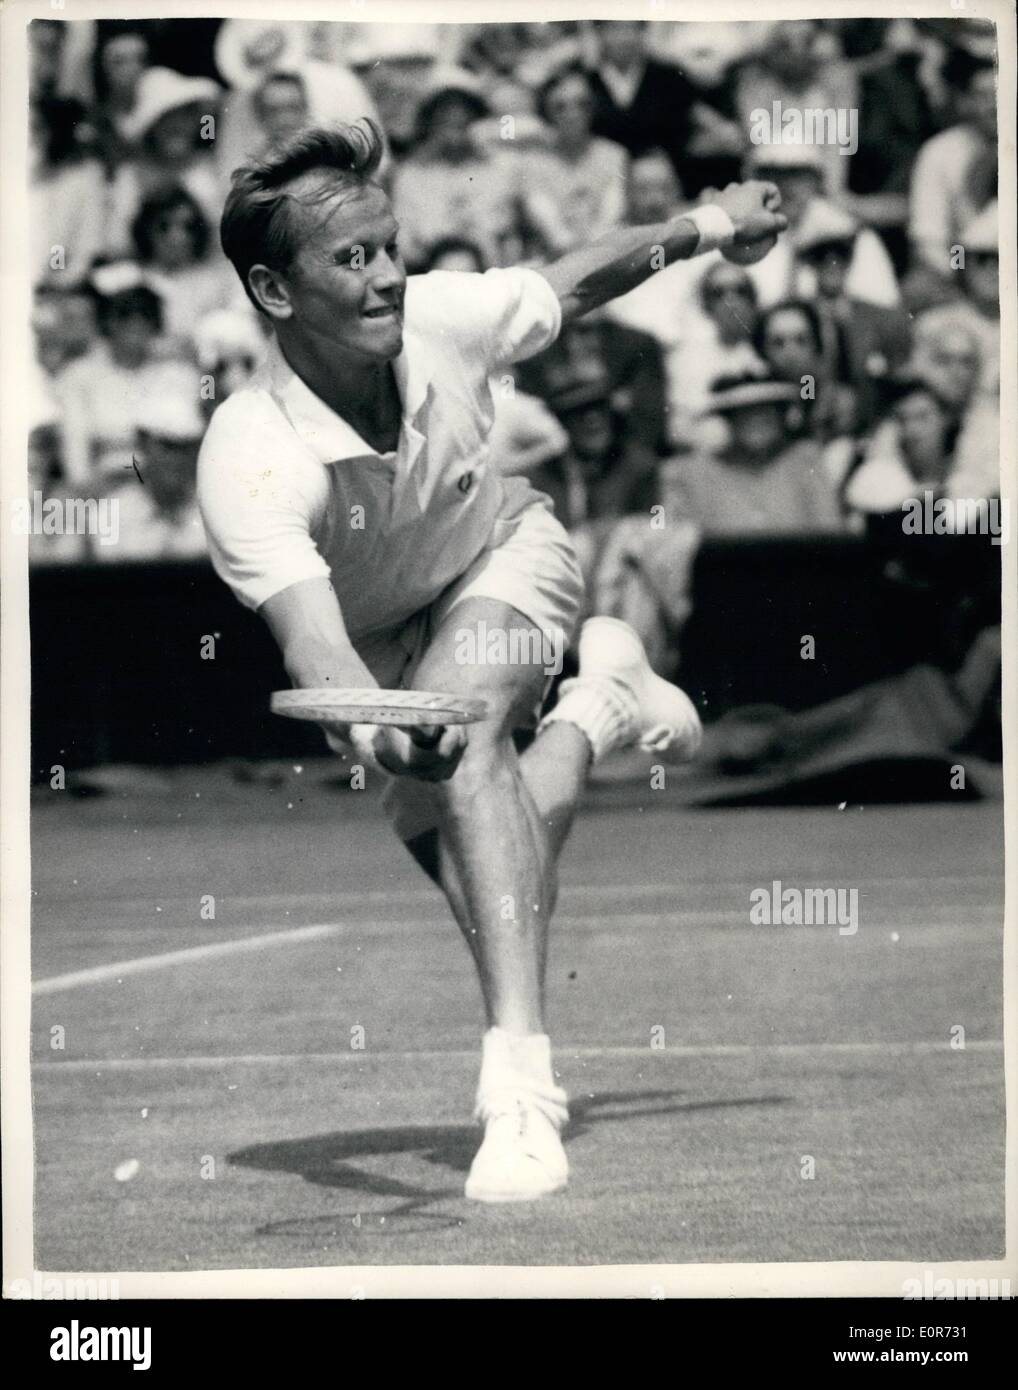 Jun 06, 1958 - Tennis in Wimbledon. Stockenberg Mulloy.: Foto zeigt S. Stockenberg von Schweden, in Aktion während seinem Match gegen G. Mulloy (USA) bei Wimbledon heute. Stockfoto